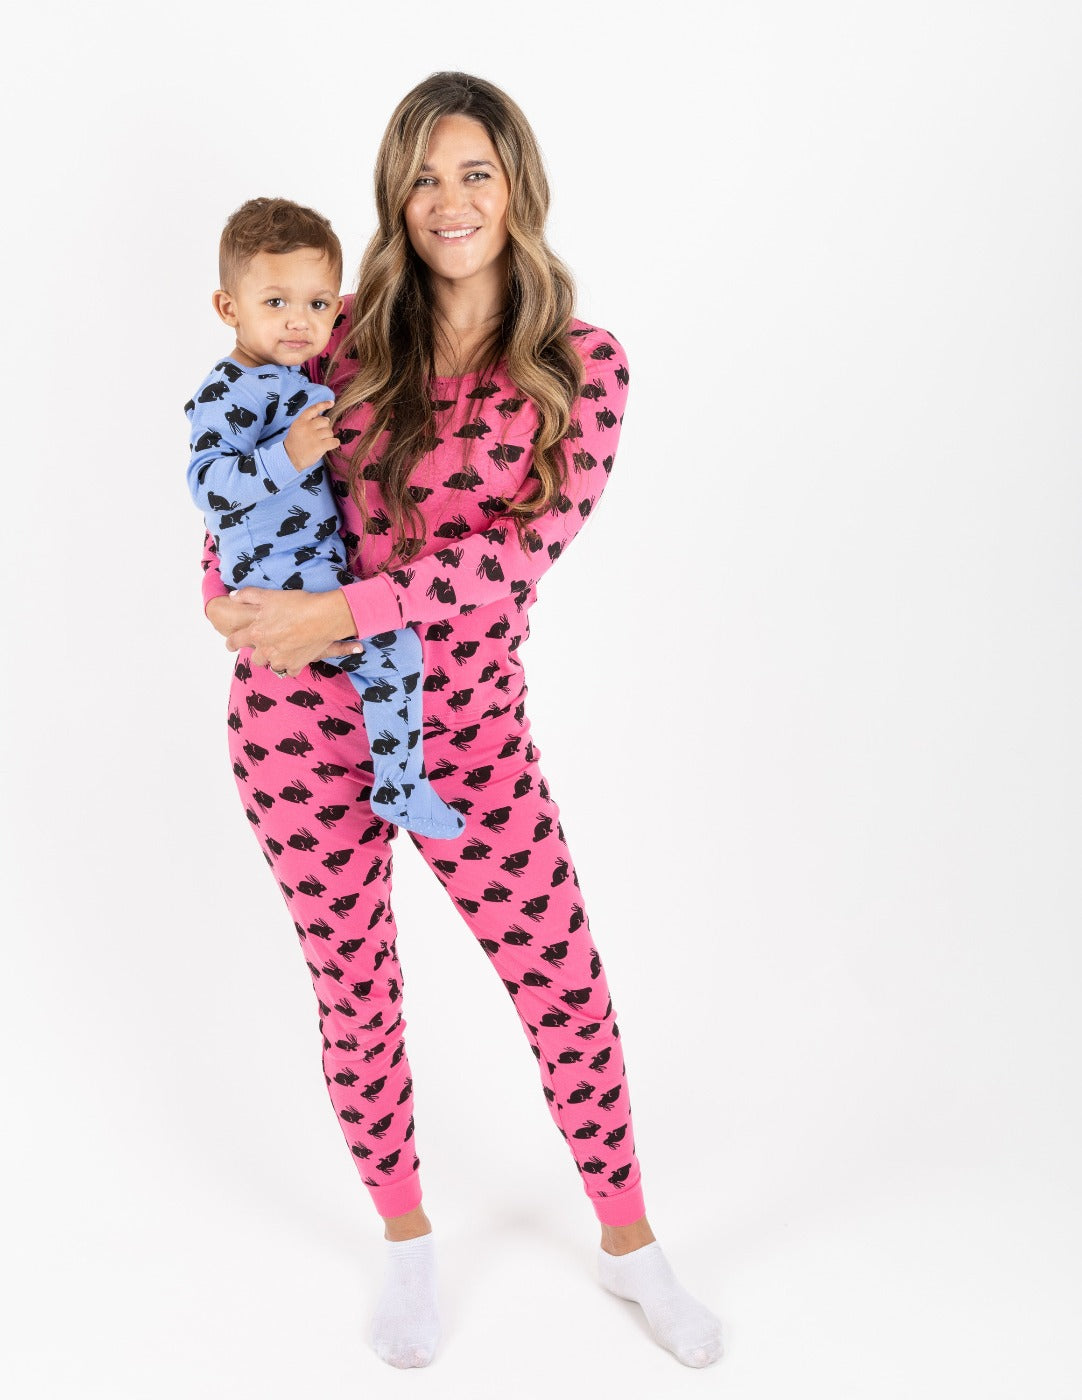 Women's Hot Pink Cotton Bunny Pajamas